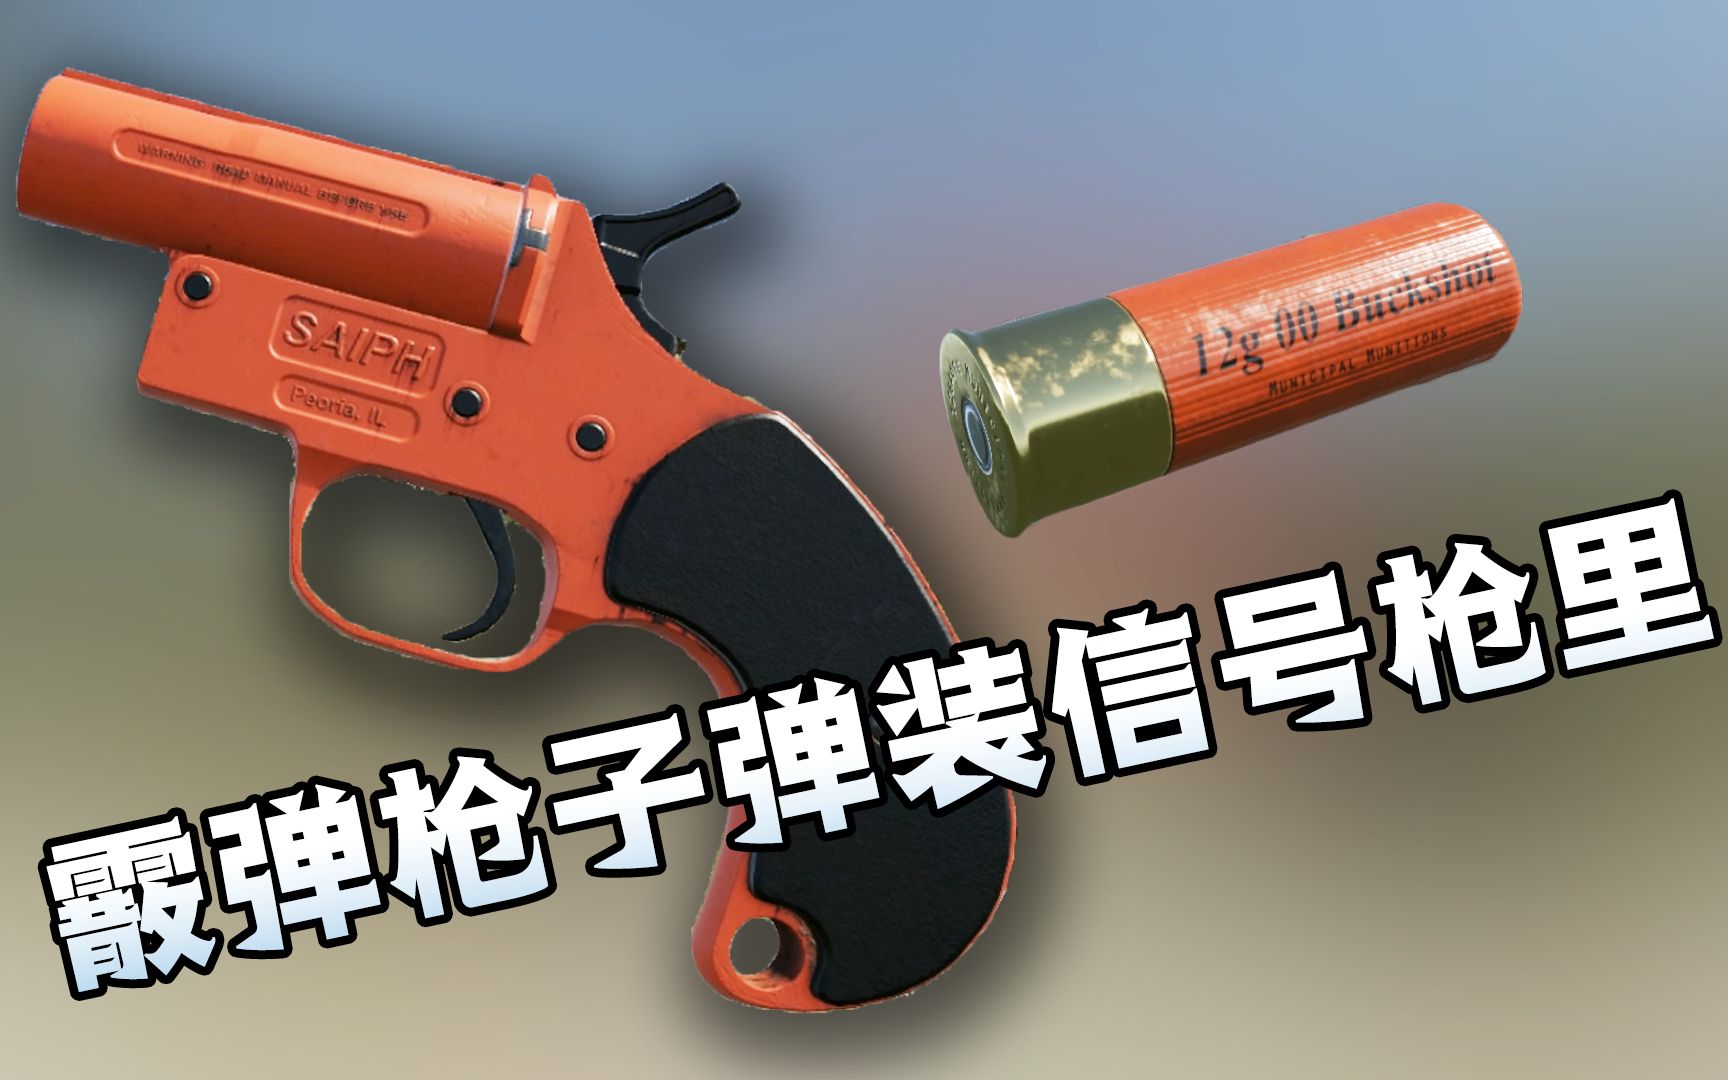 【游戏NOBA】“清屋专用””近战利器“——雷明顿M870霰弹枪系列